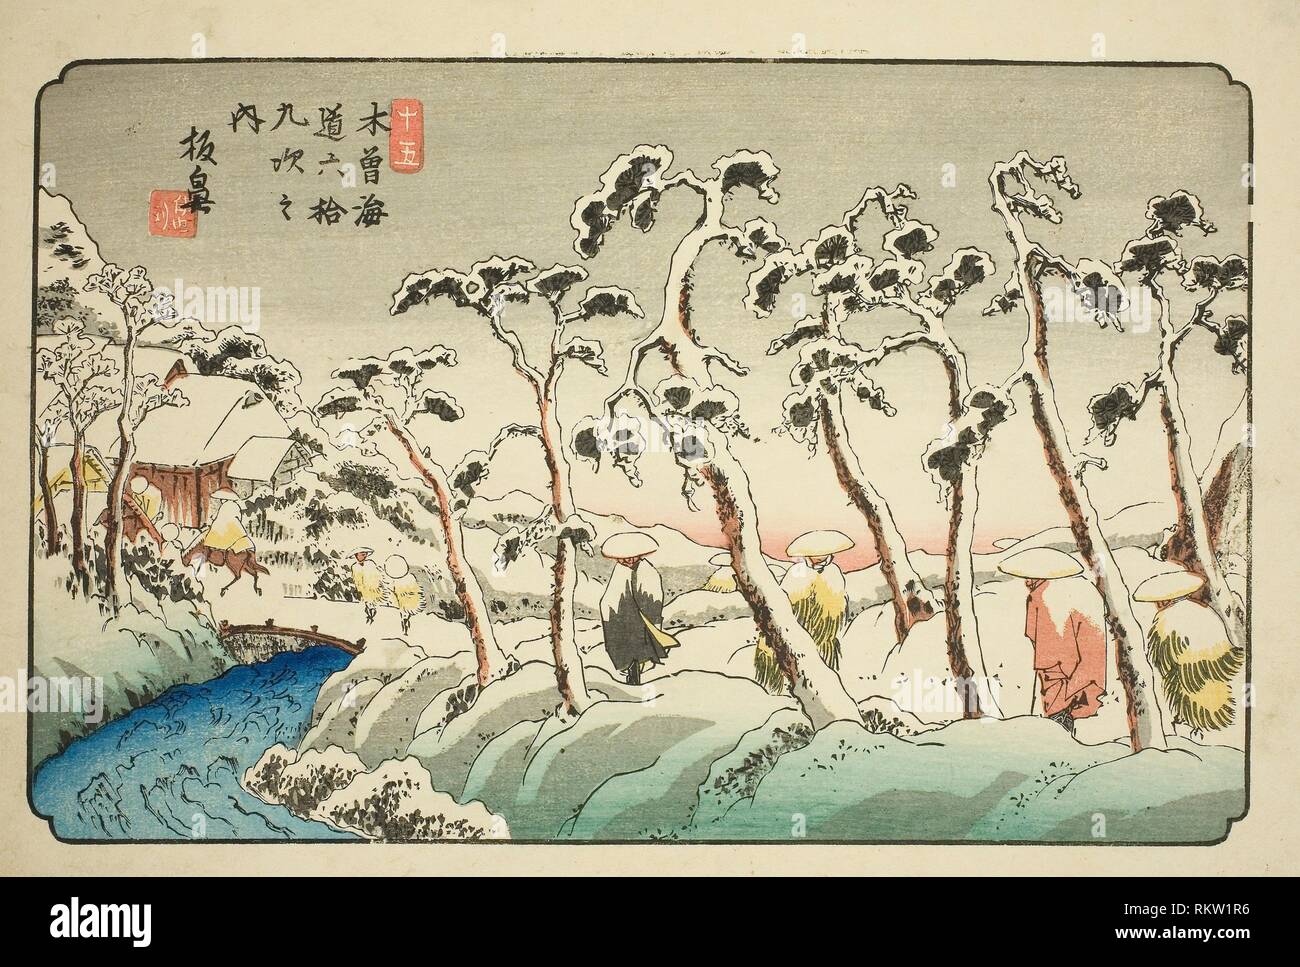 Nº 15:: Itahana Itahana (jugo), de la serie "sesenta y nueve estaciones de la Kisokaido (Kisokaido rokujukyu tsugi no uchi)'' - c. 1835/36 - Keisai Foto de stock